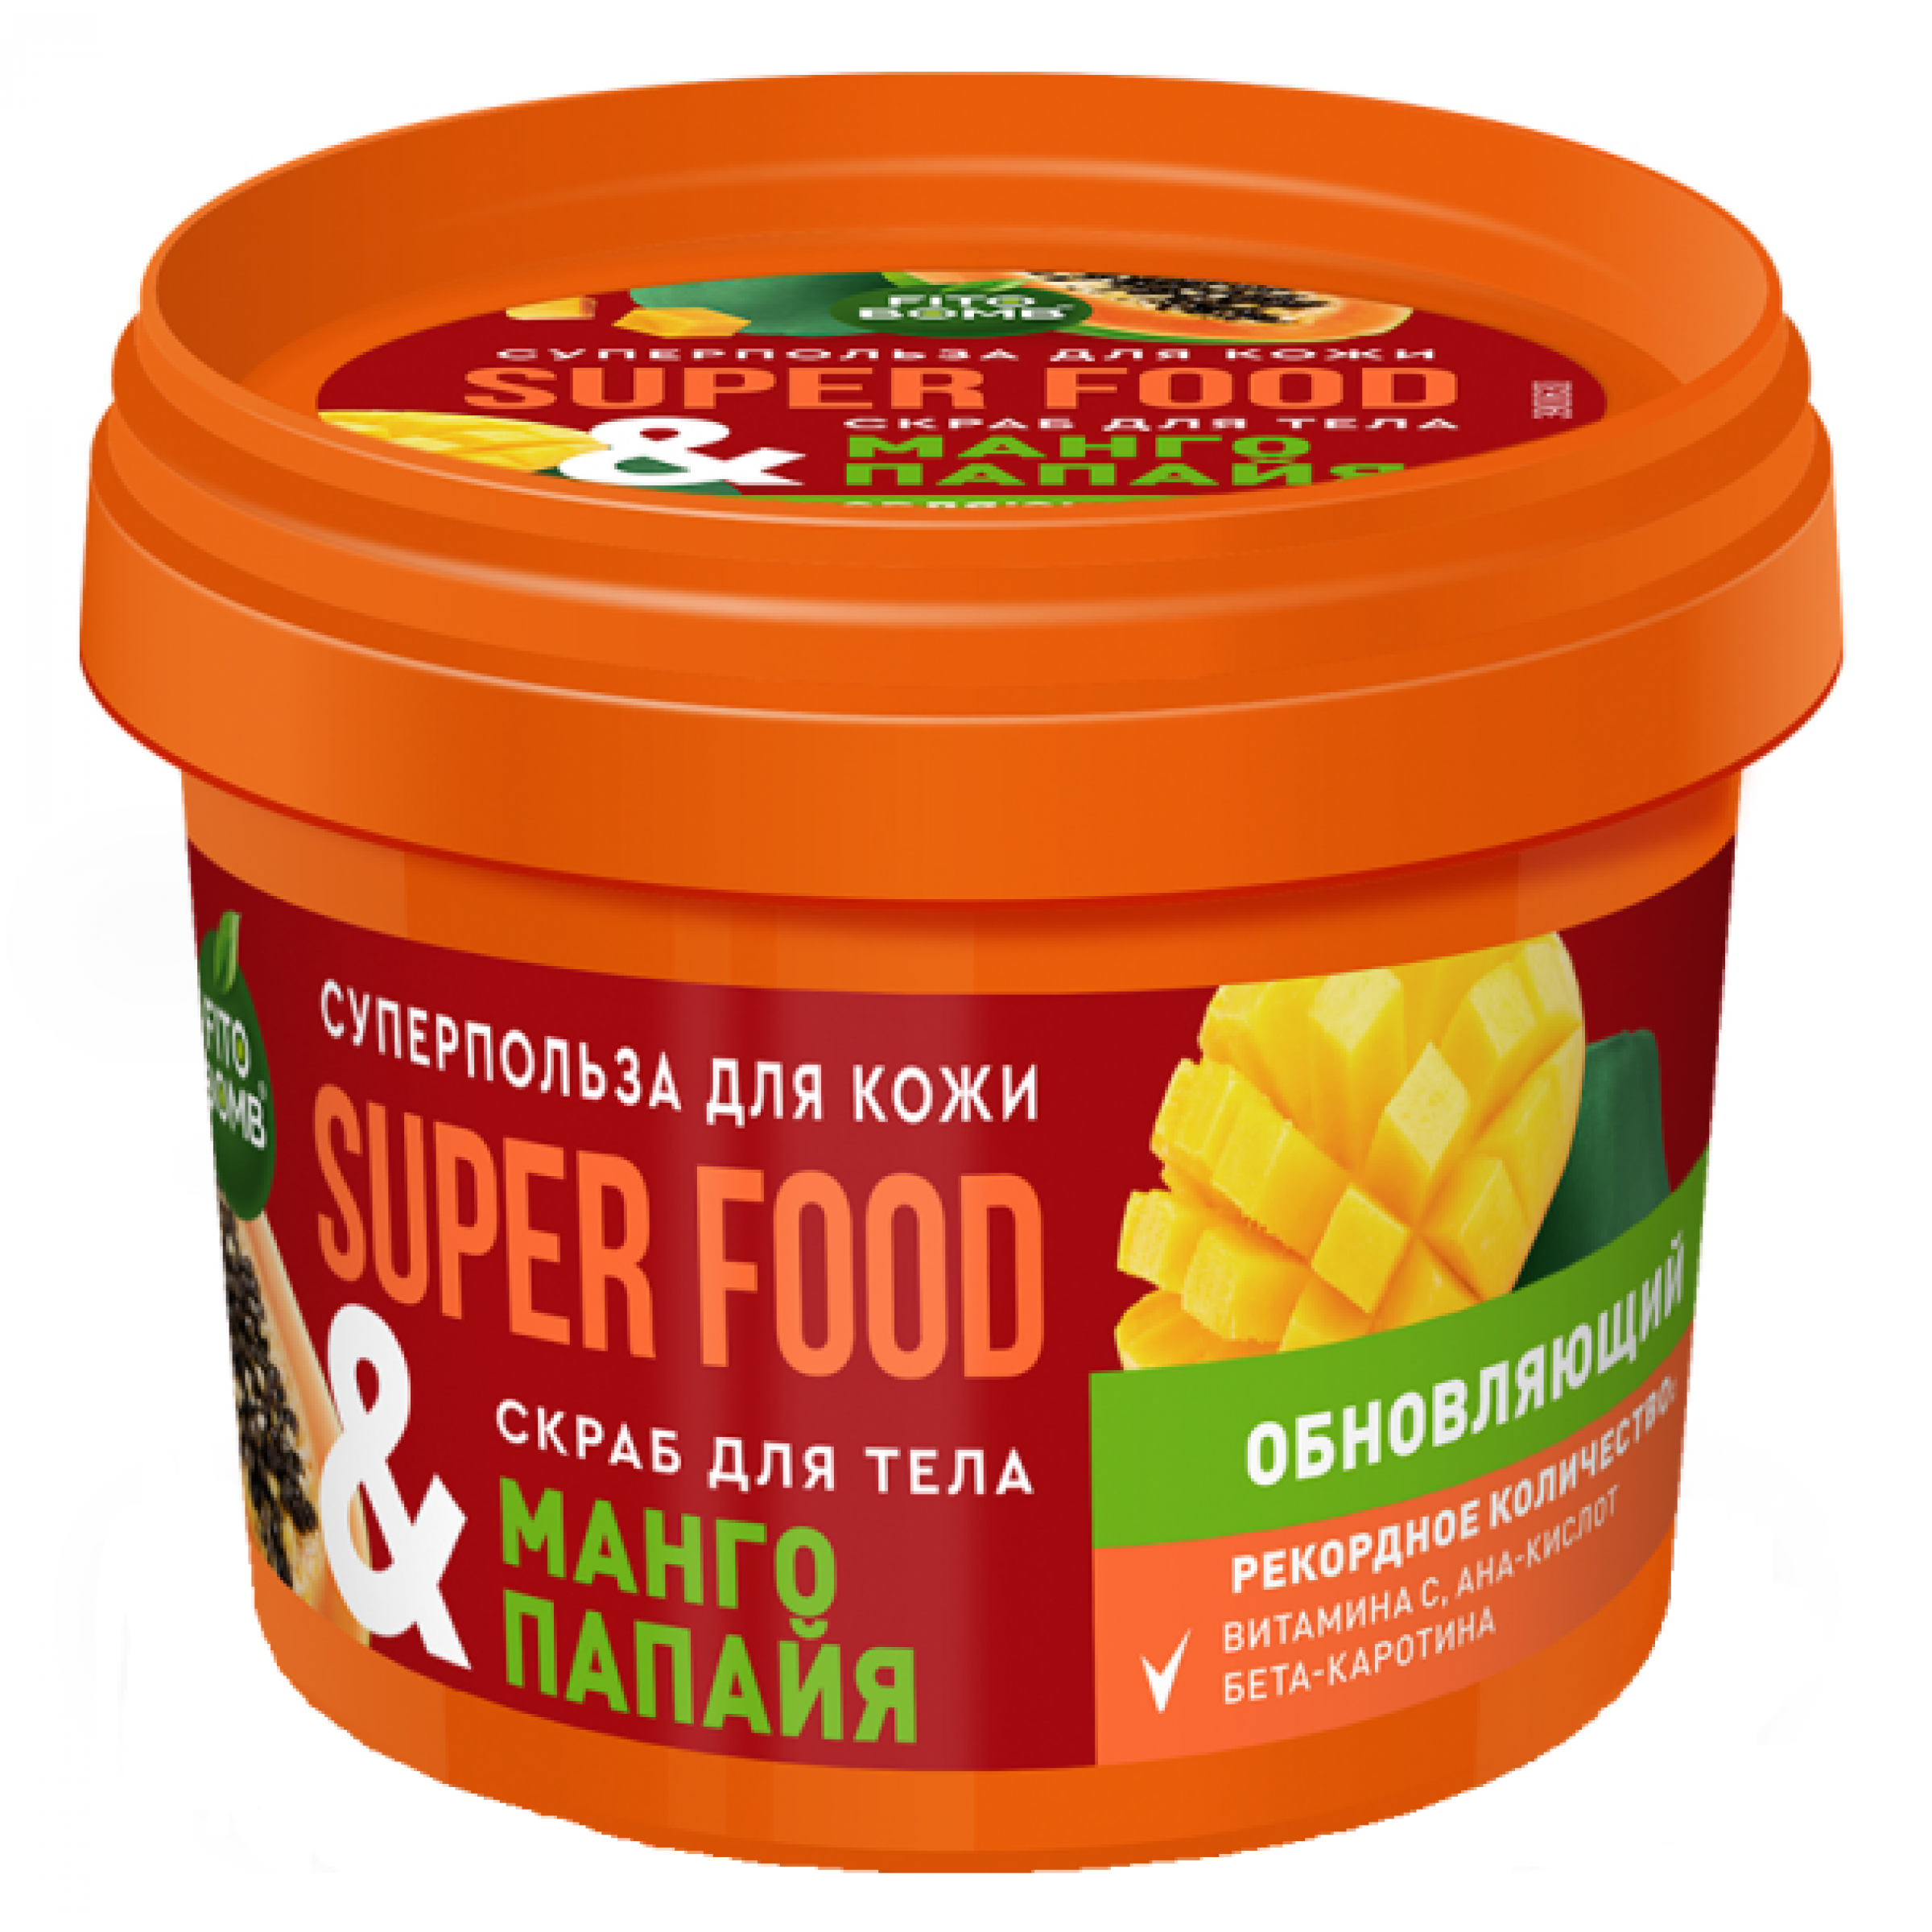 Скраб для тела ФИТОкосметик Super food Манго и папайя Обновляющий 100 мл